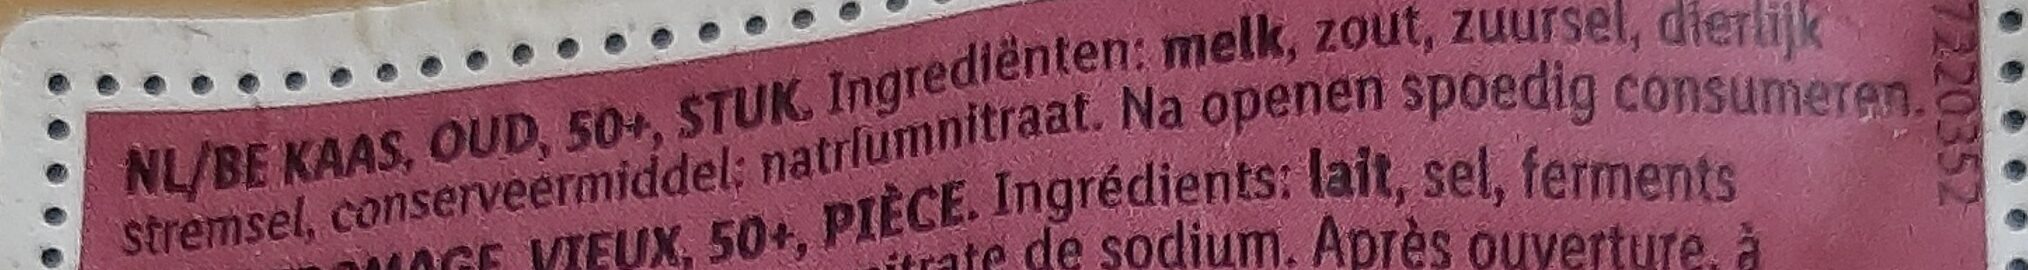 Oude kaas - Ingrediënten